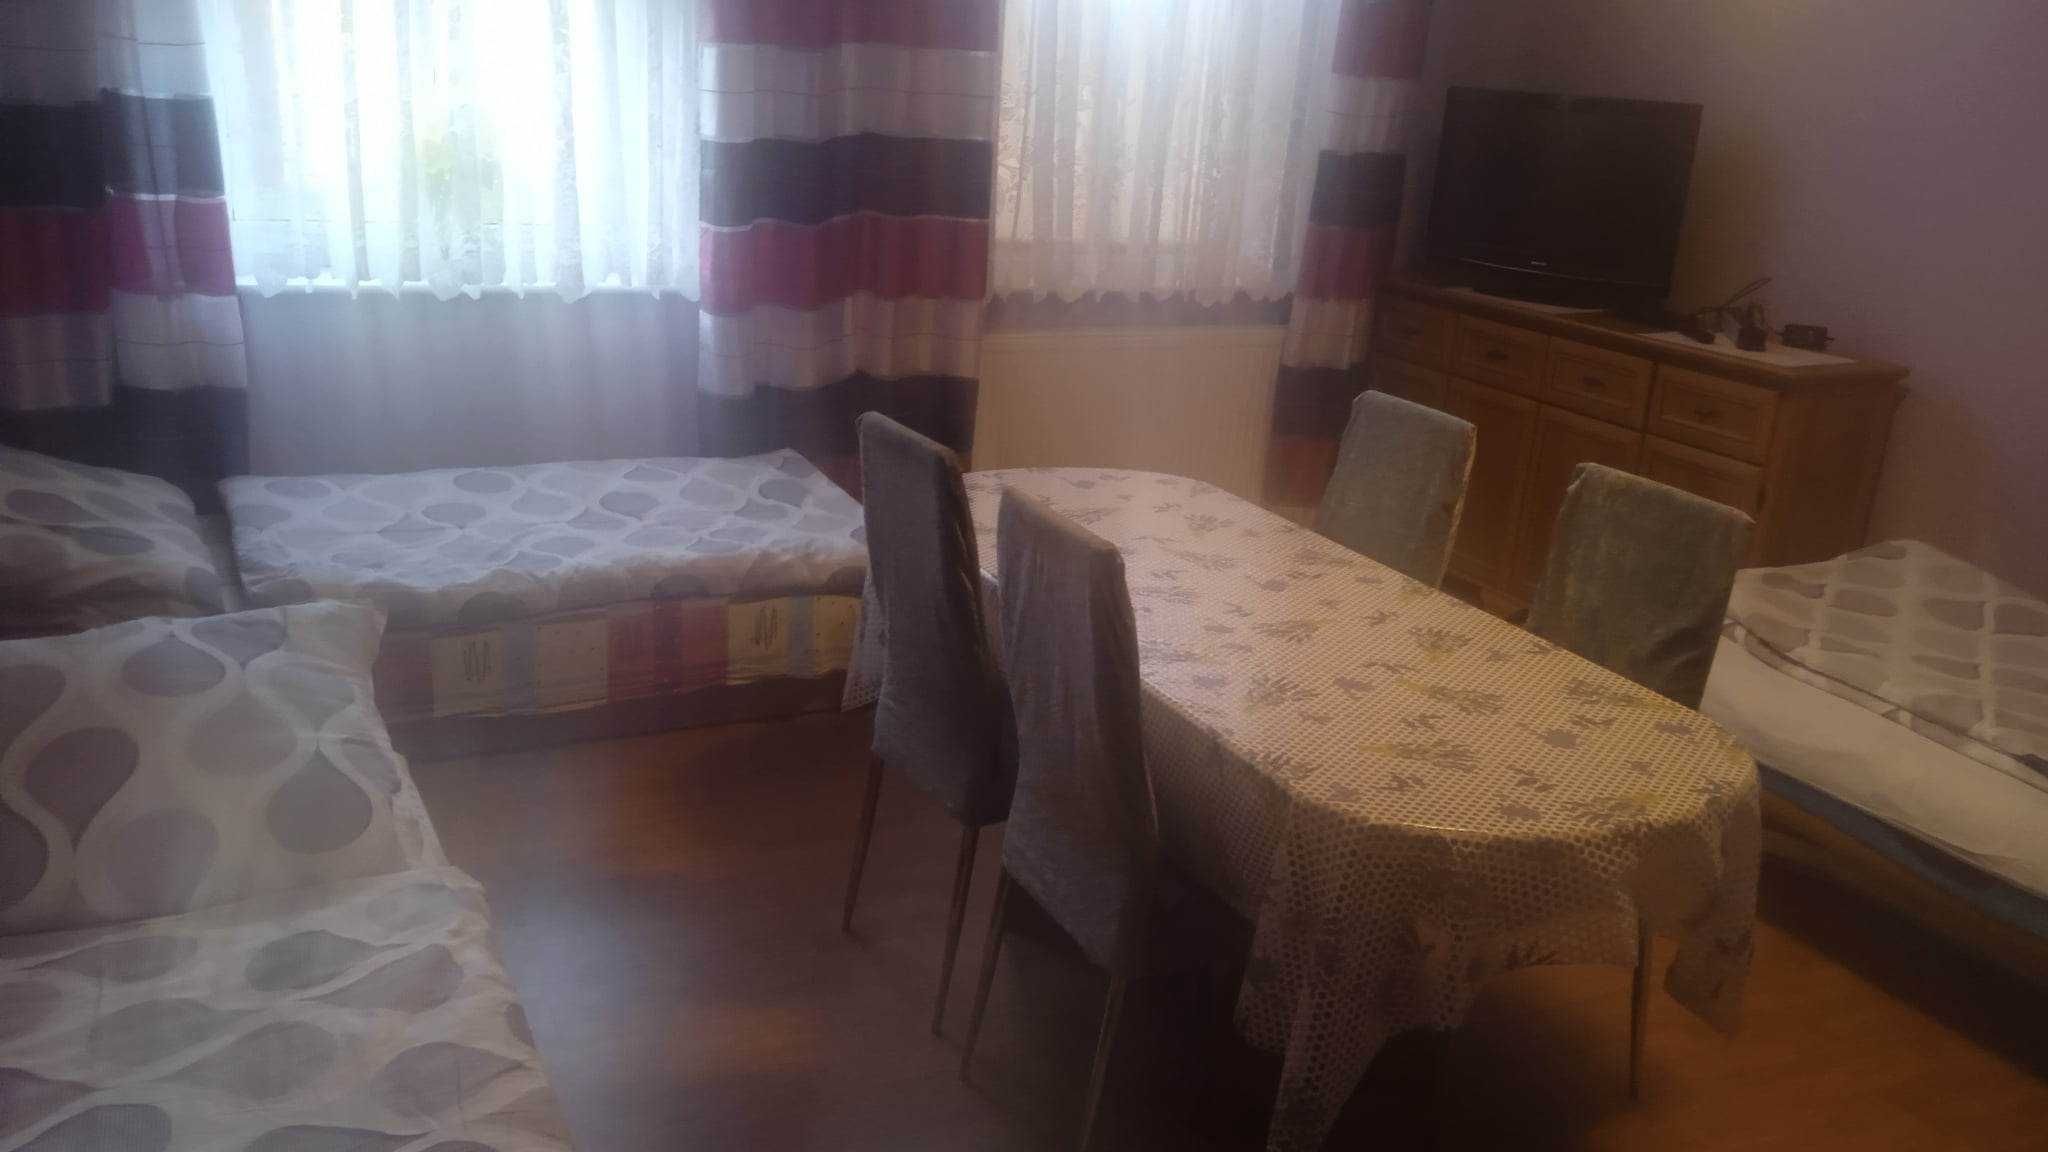 Tanie pokoje pracownicze (mieszkanie) Strzeżewko k. Łukęcin-Pobierowo